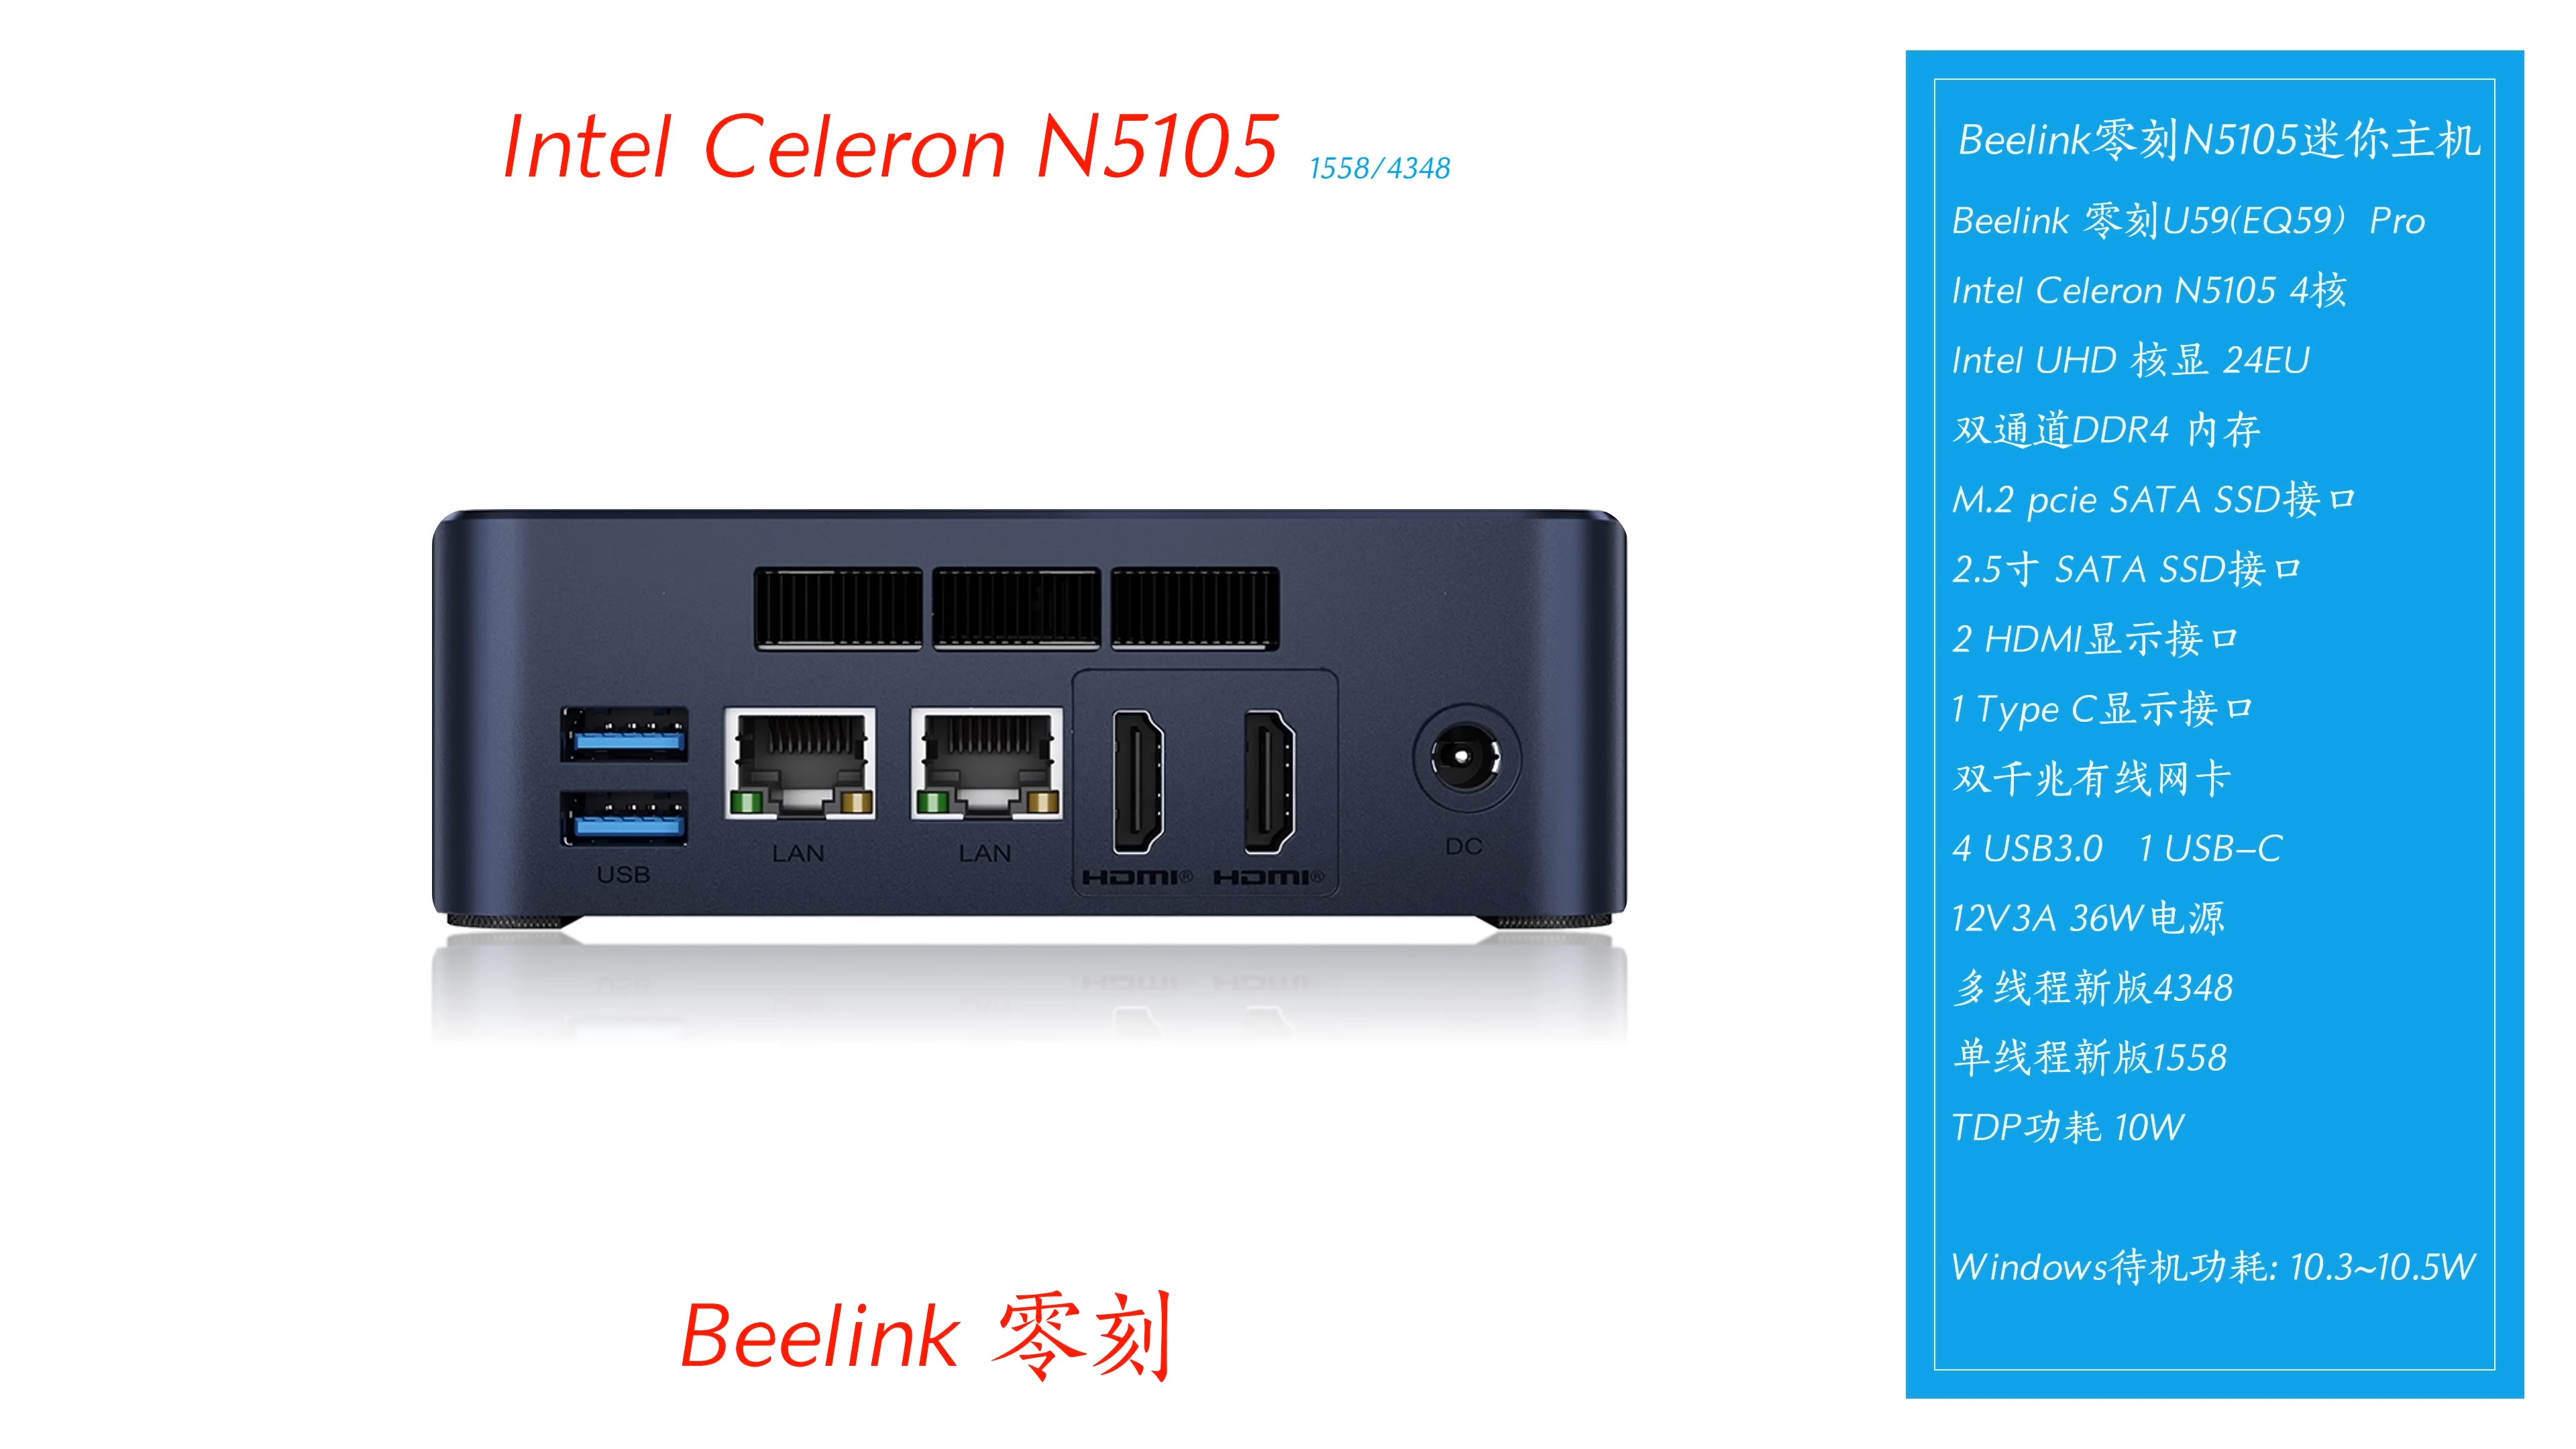 【한국어 자막】 Beelink의 가장 저렴한 비즈니스 미니 PC! U59 Pro N5105 듀얼 기가비트 미니 PC! 9-14 screenshot.jpeg